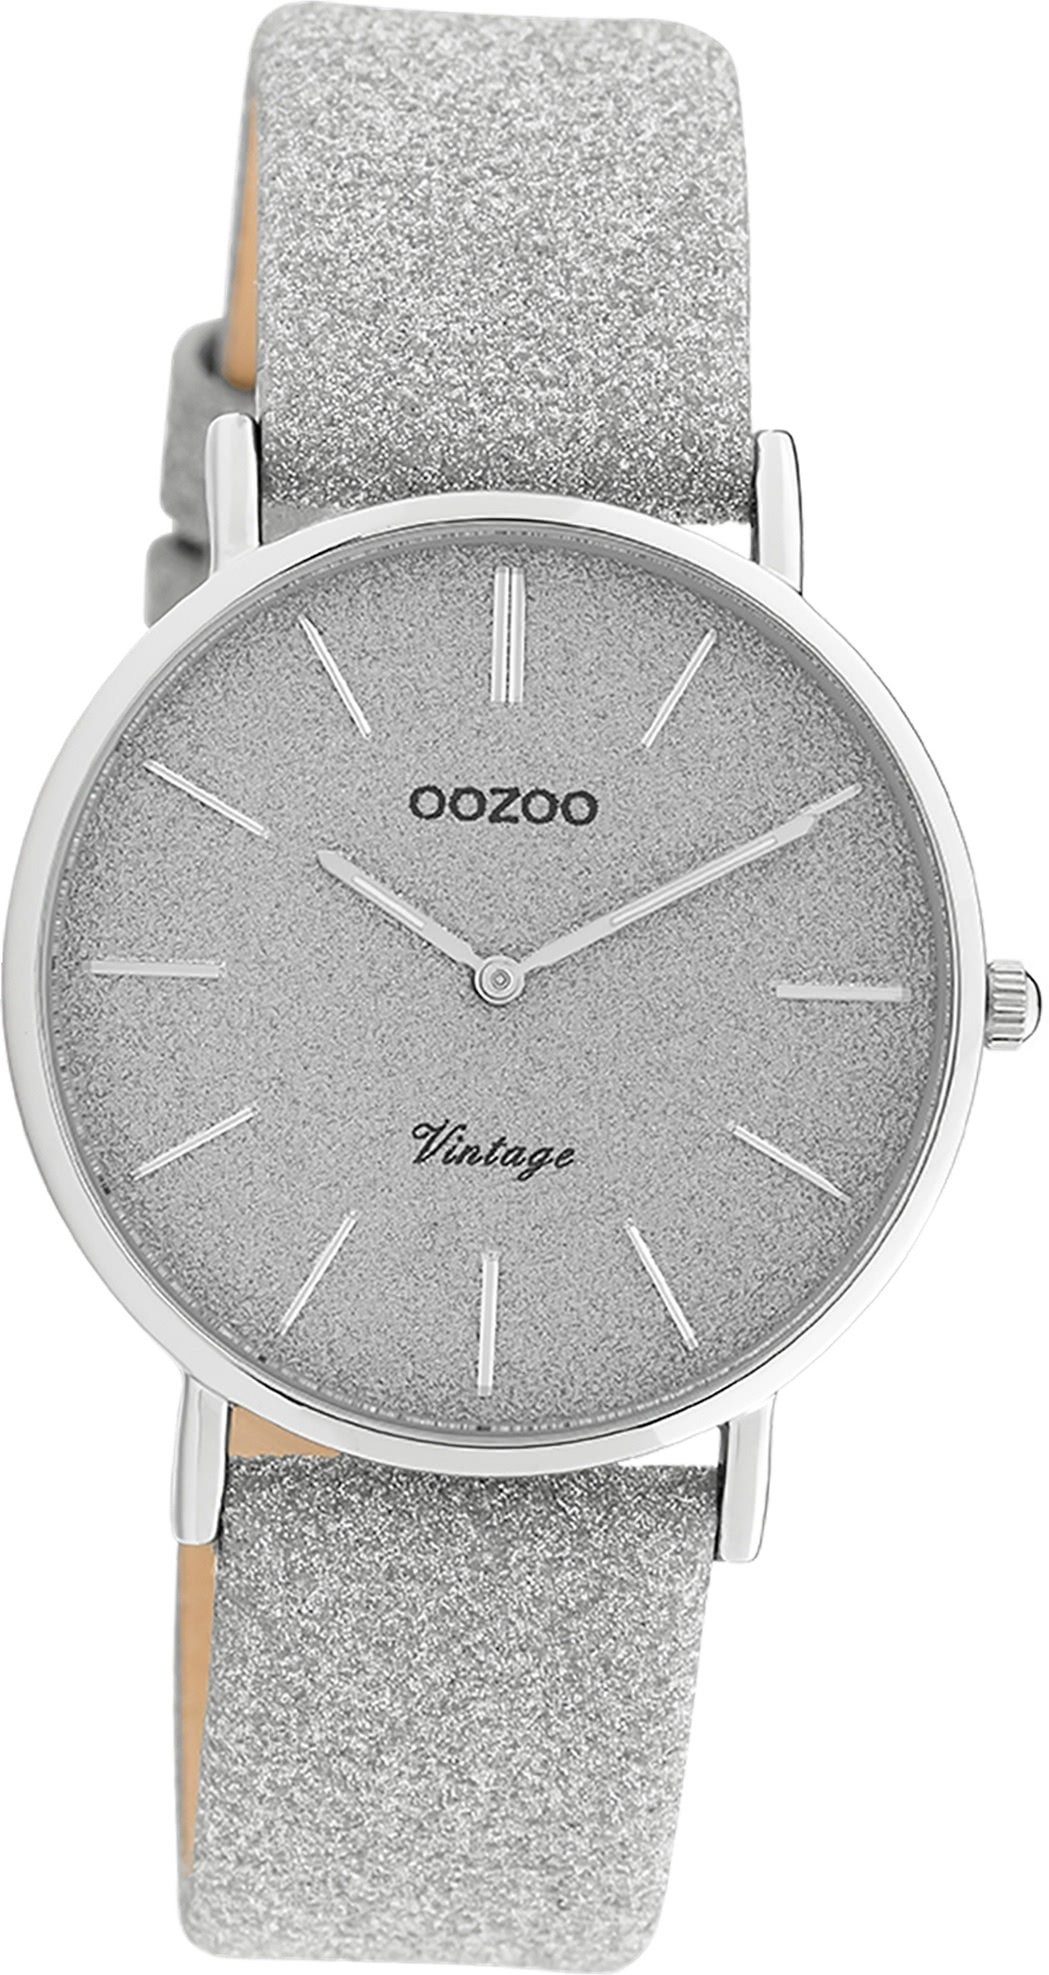 OOZOO Quarzuhr Oozoo Leder Damen Uhr C20200 Analog, Damenuhr Lederarmband silber, rundes Gehäuse, mittel (ca. 32mm)